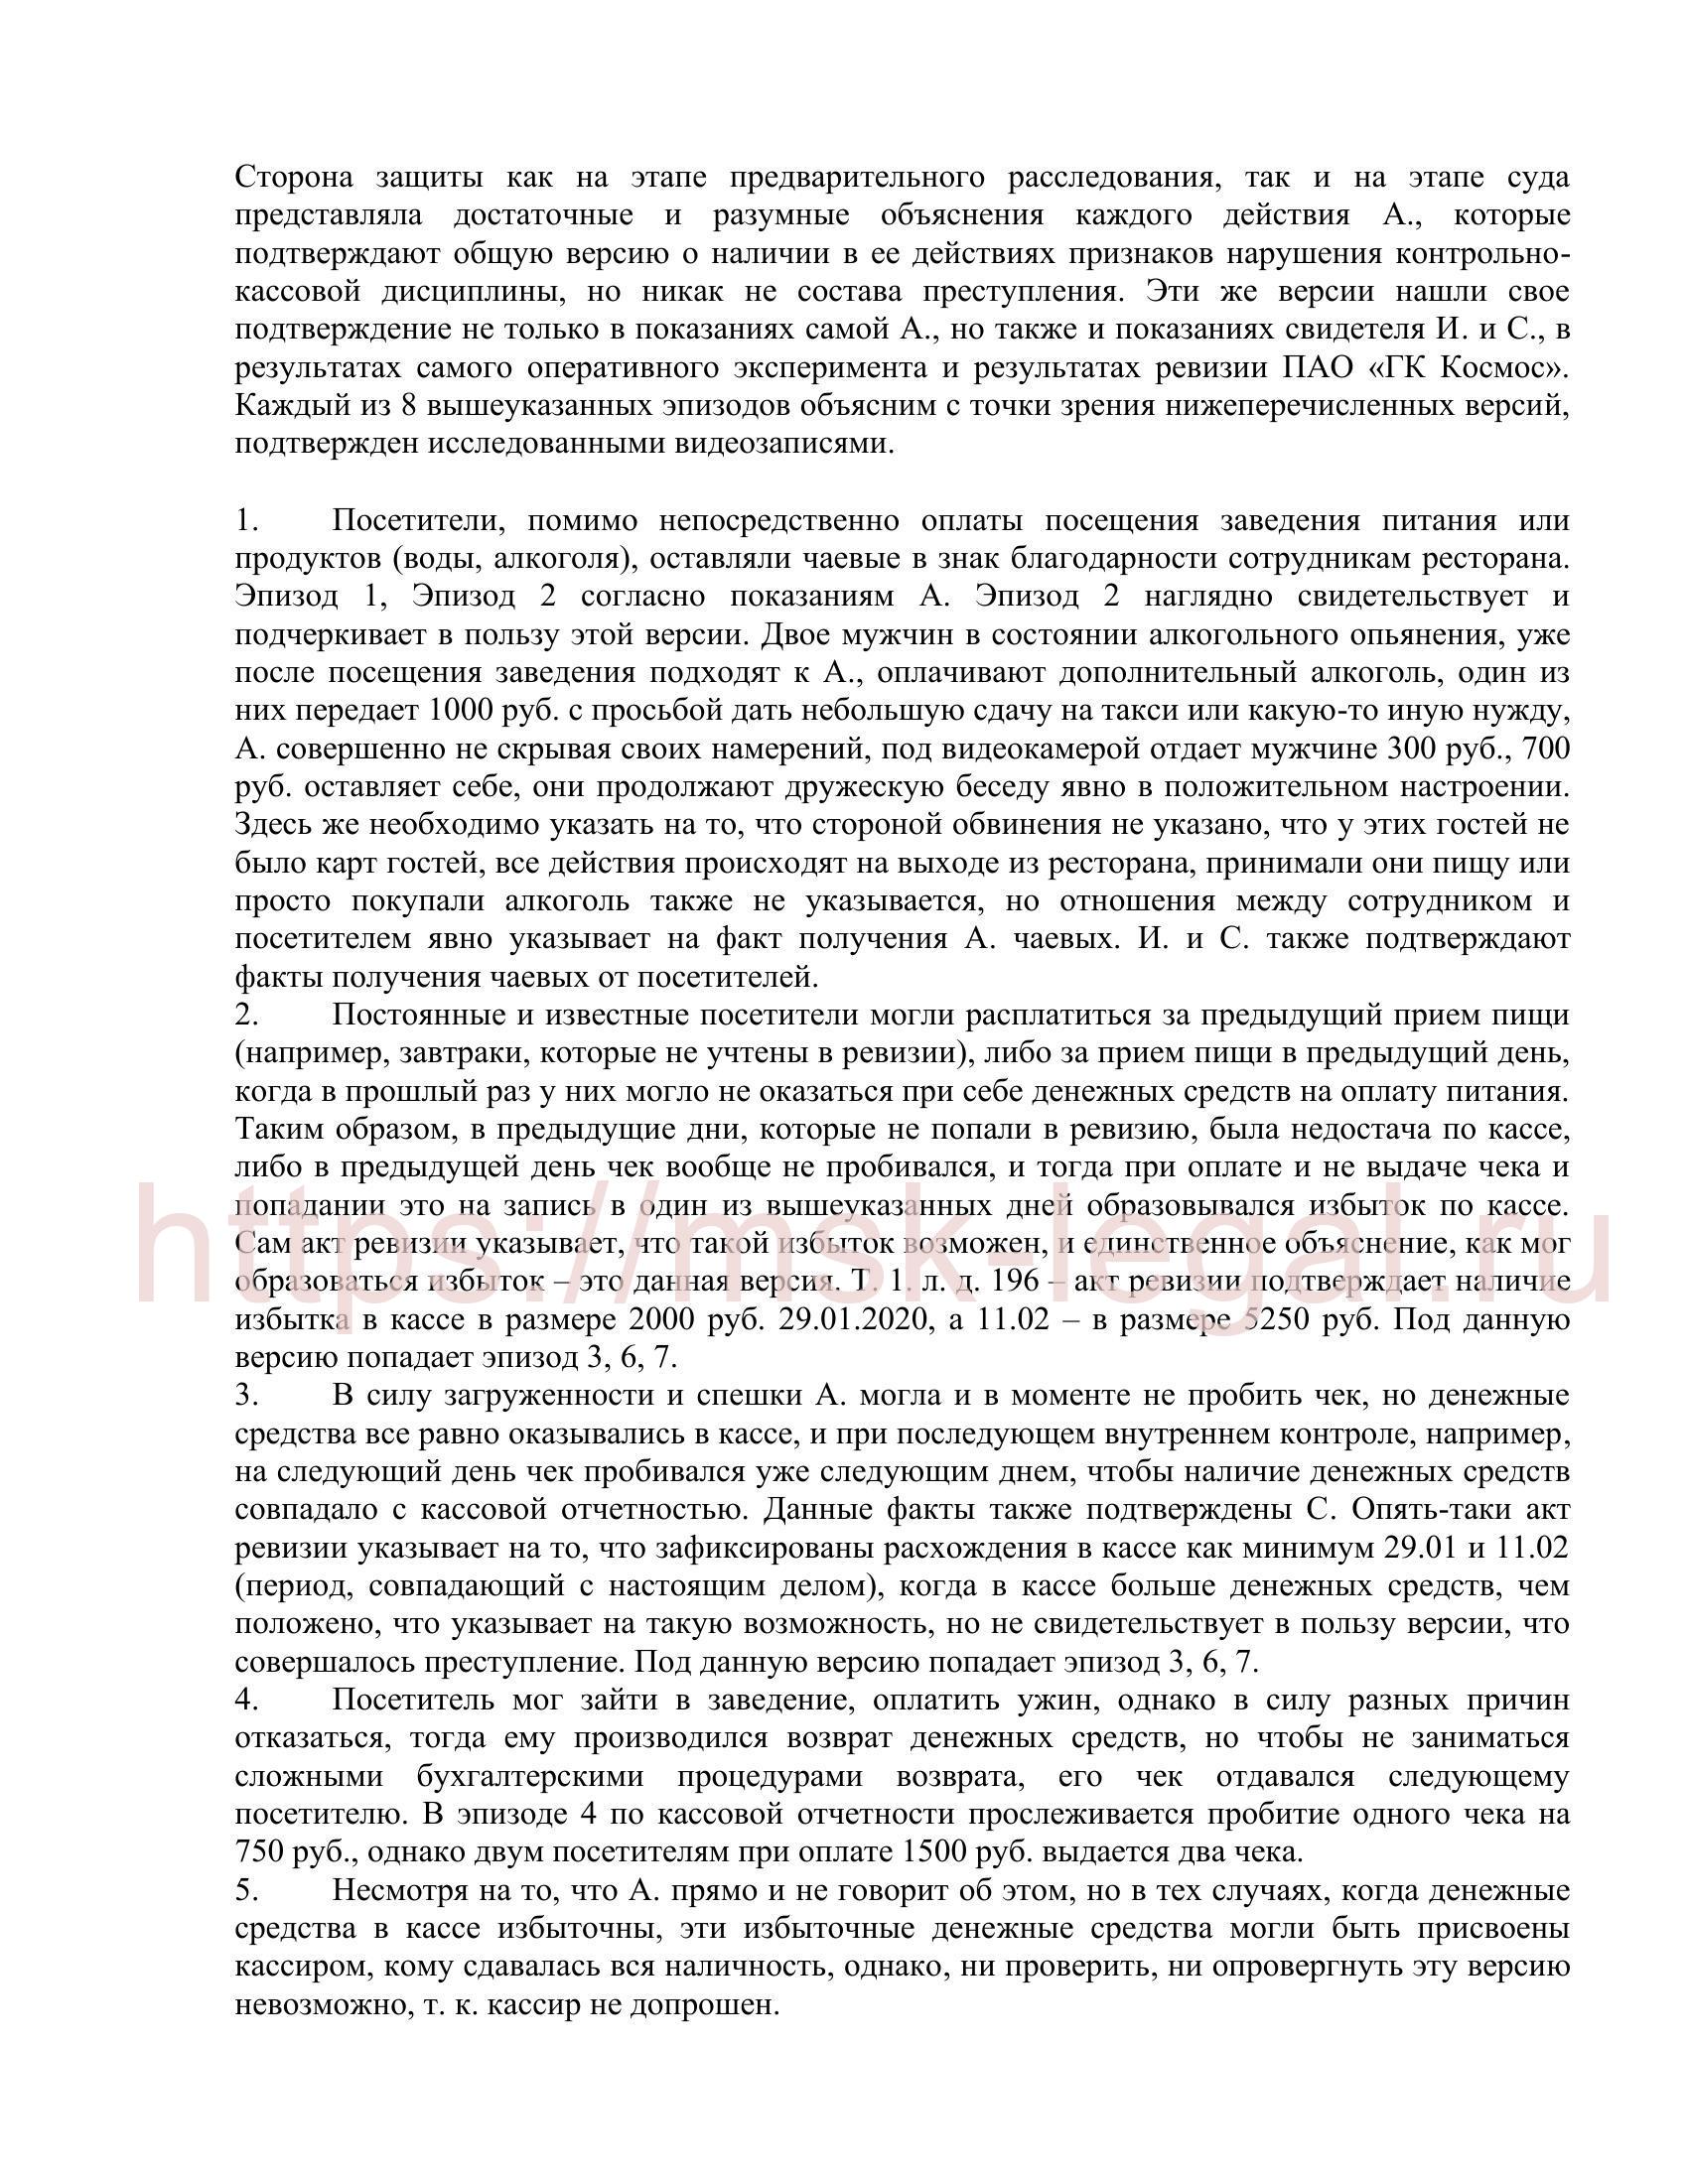 Пример апелляционной жалобы по ст. 160 УК РФ